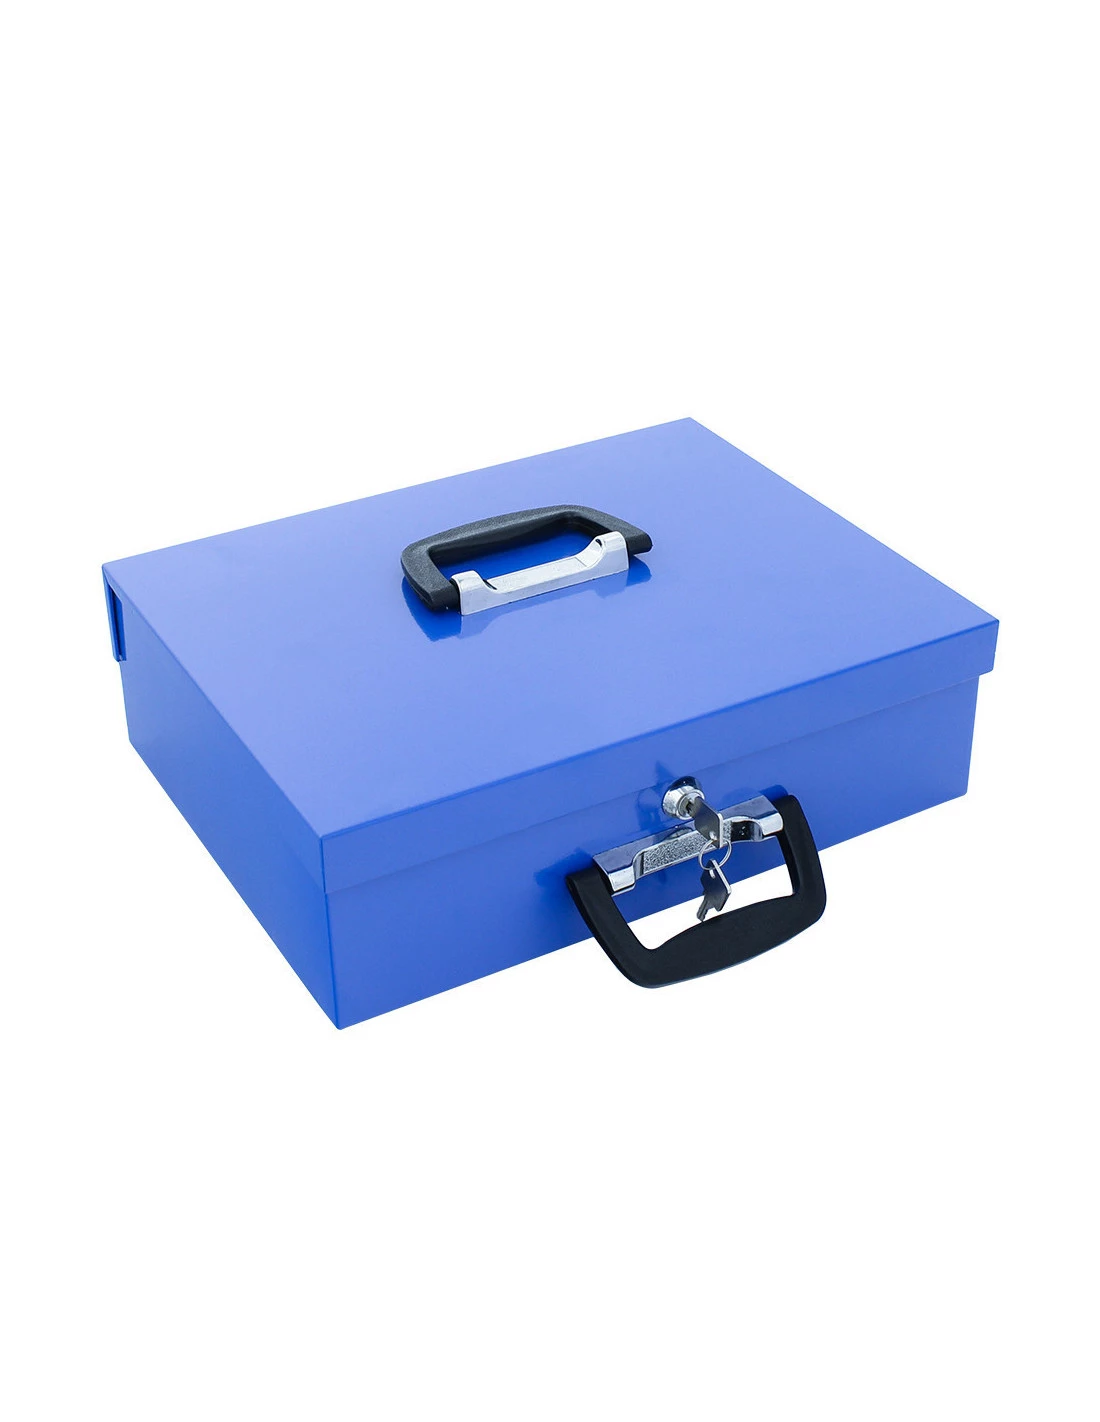 Rottner Pro Box One Caisse à monnaie turquoise avec fermeture à